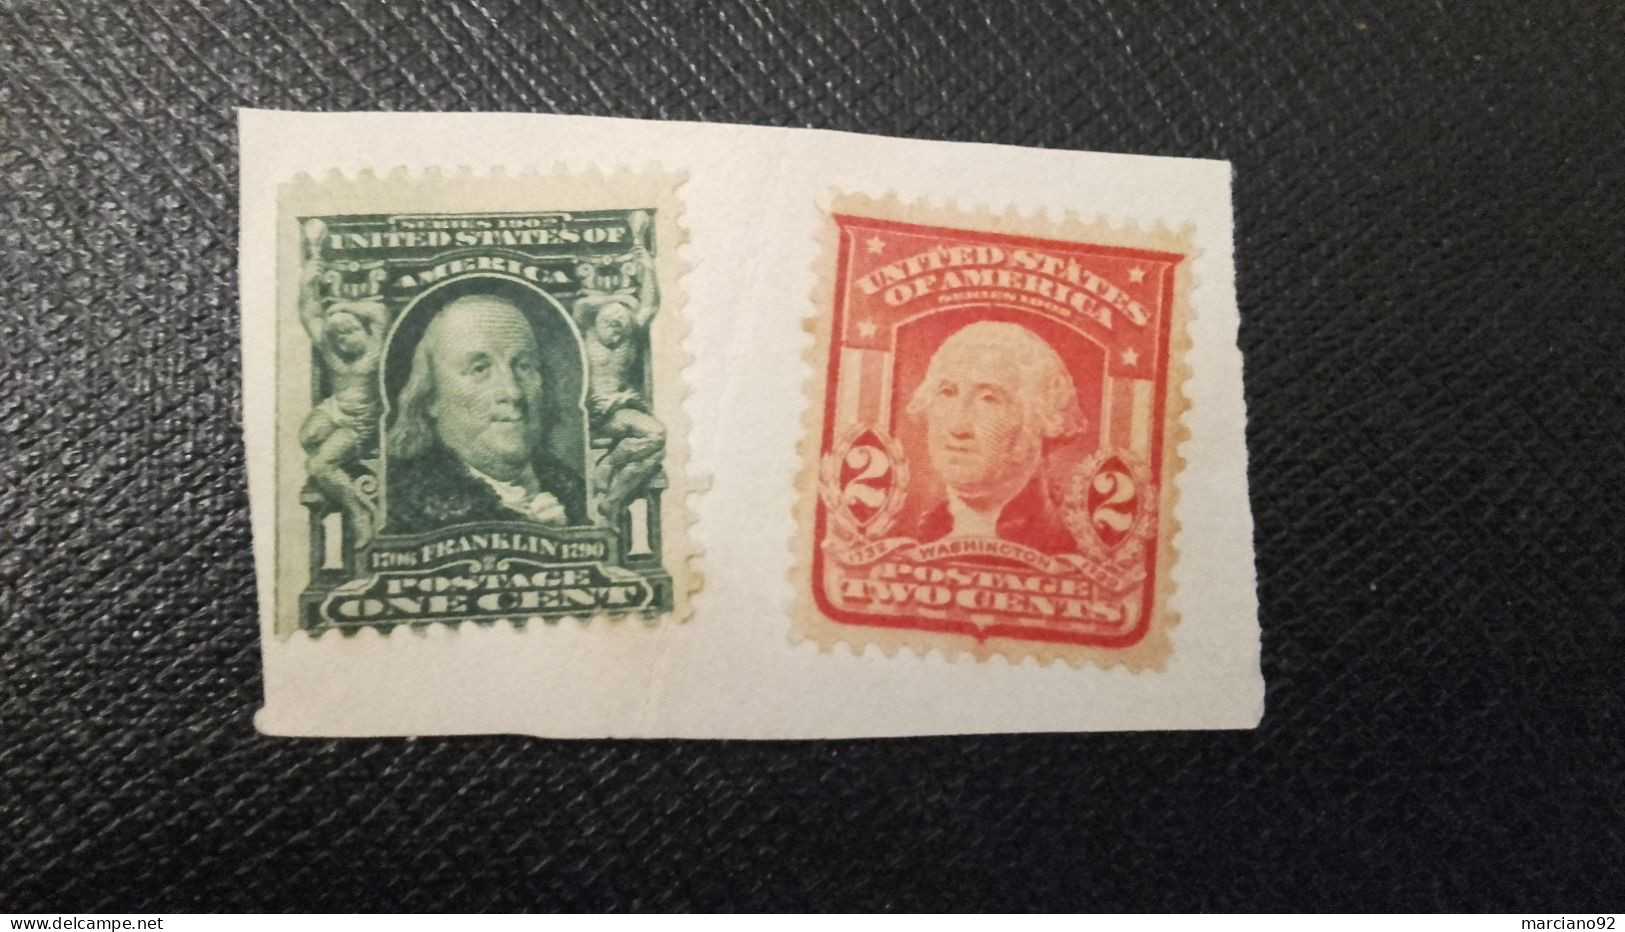 rares deux timbres USA neufs sur fragment